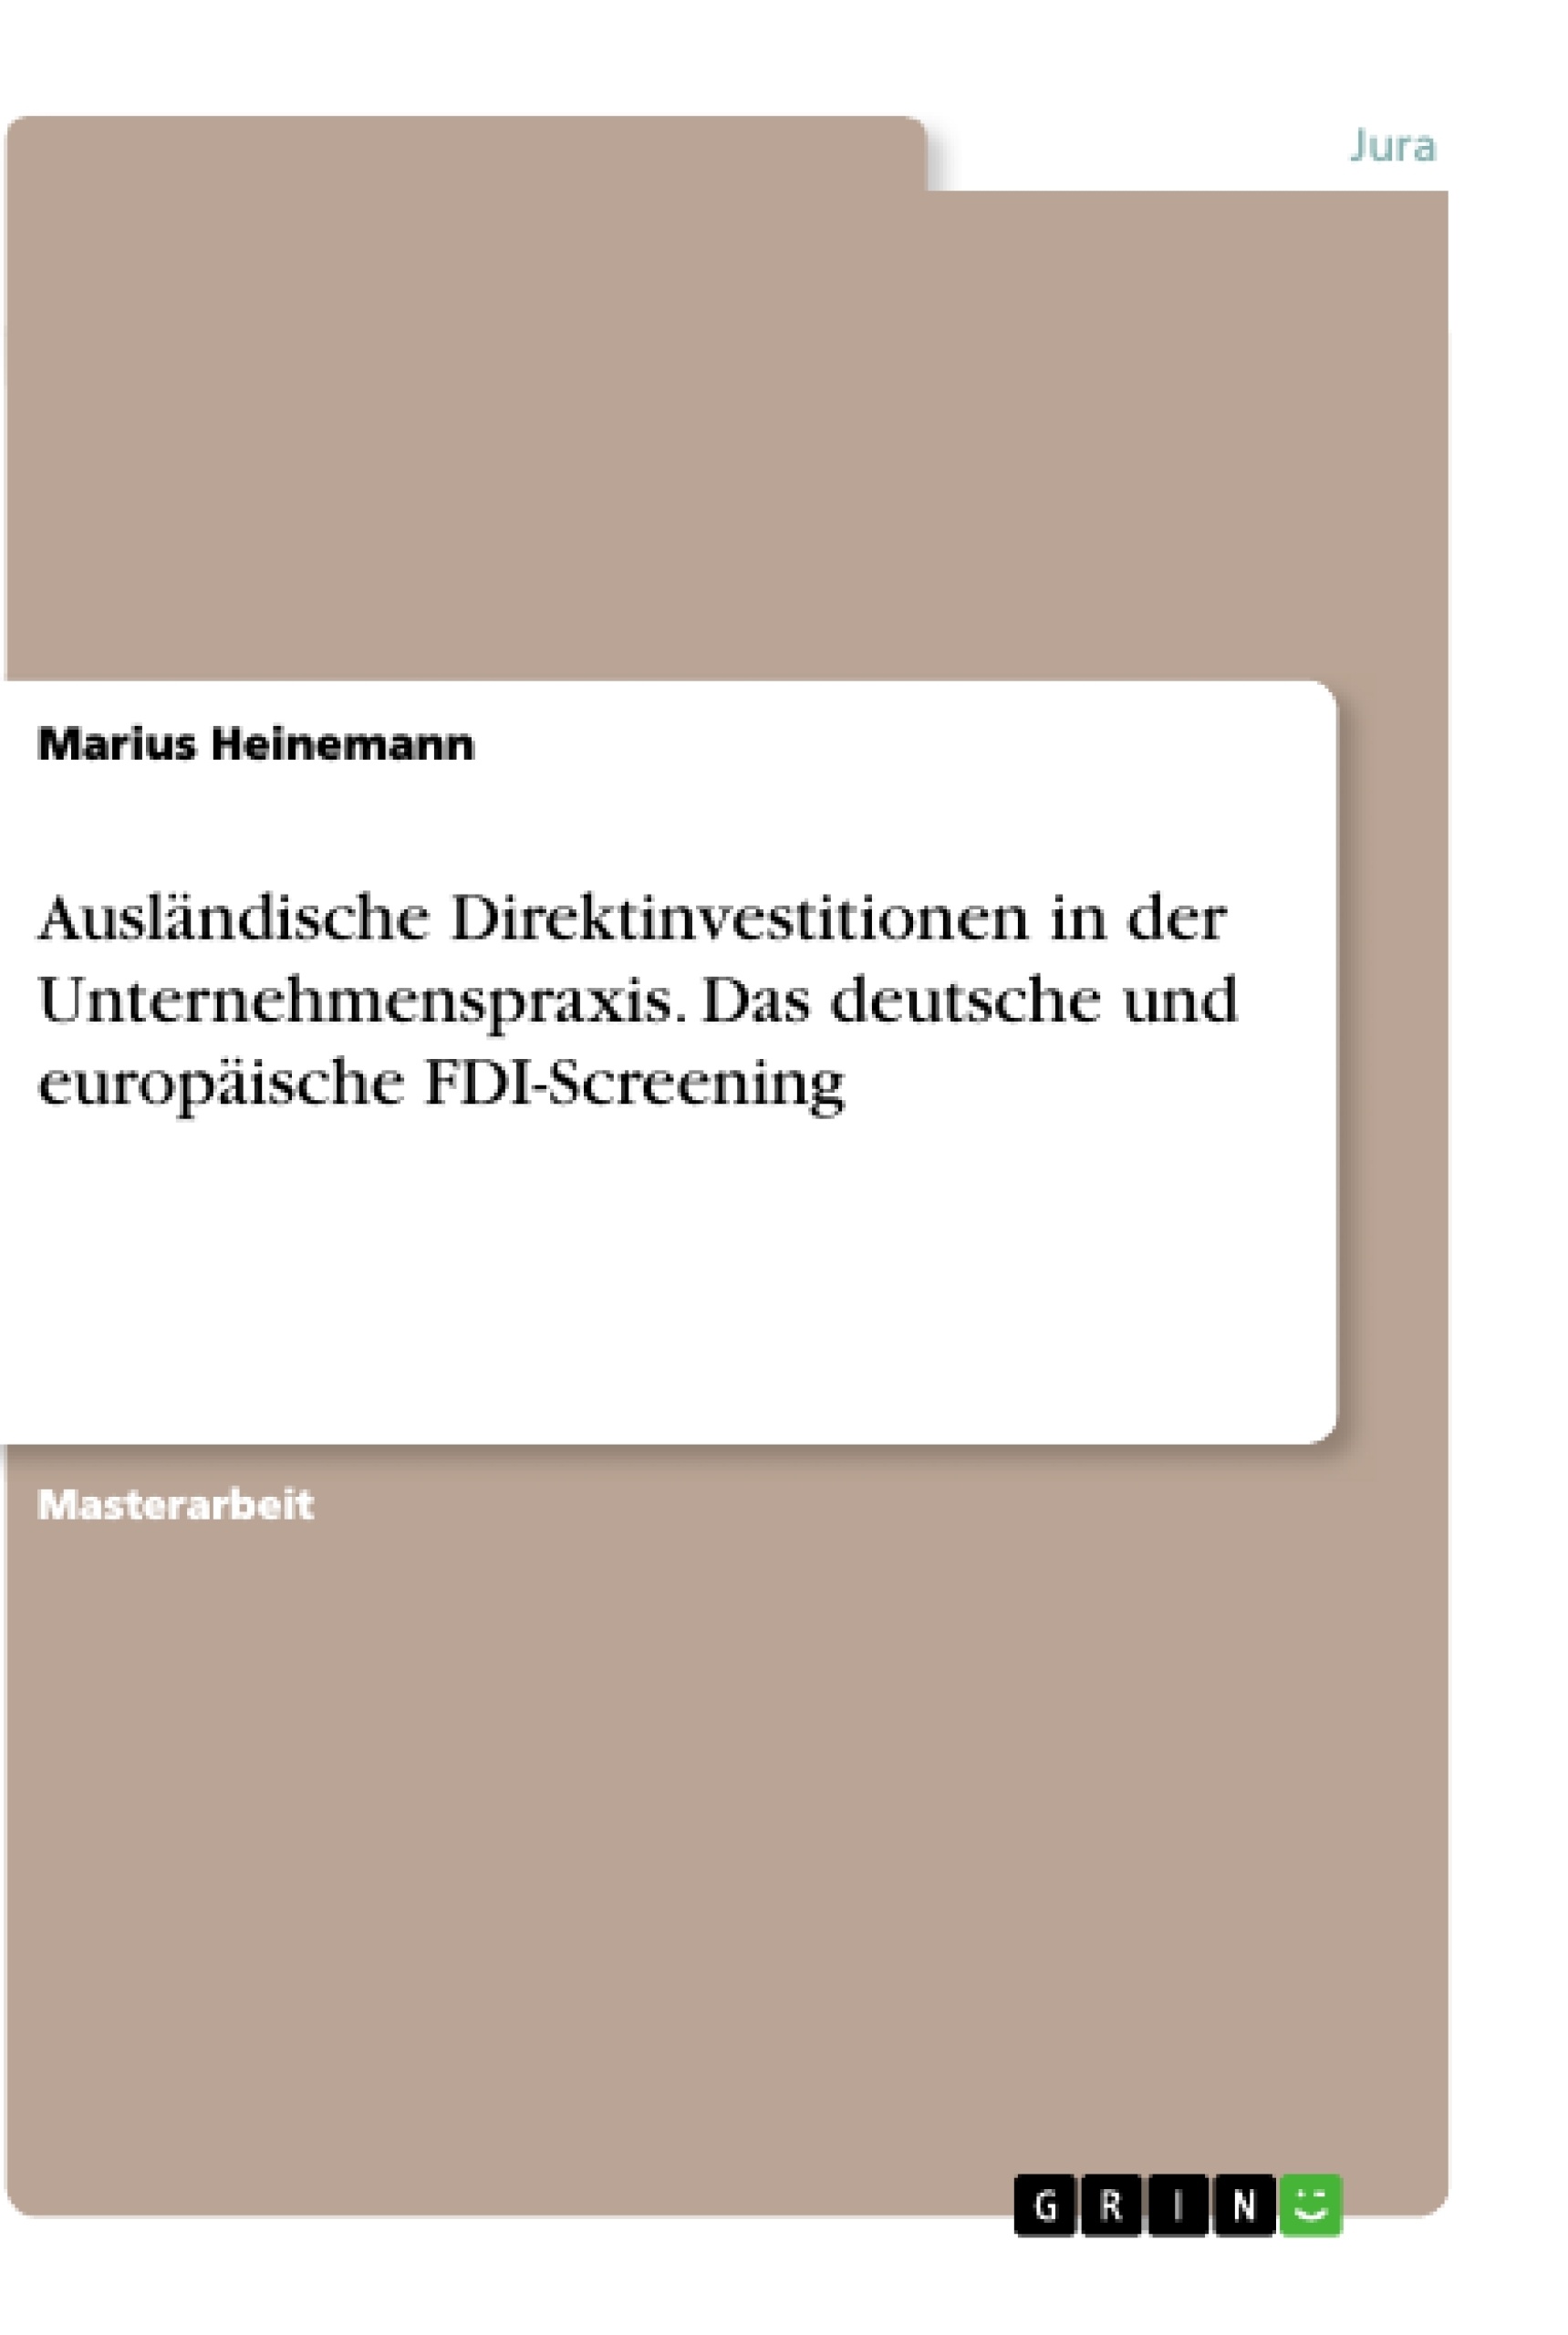 Título: Ausländische Direktinvestitionen in der Unternehmenspraxis. Das deutsche und europäische FDI-Screening